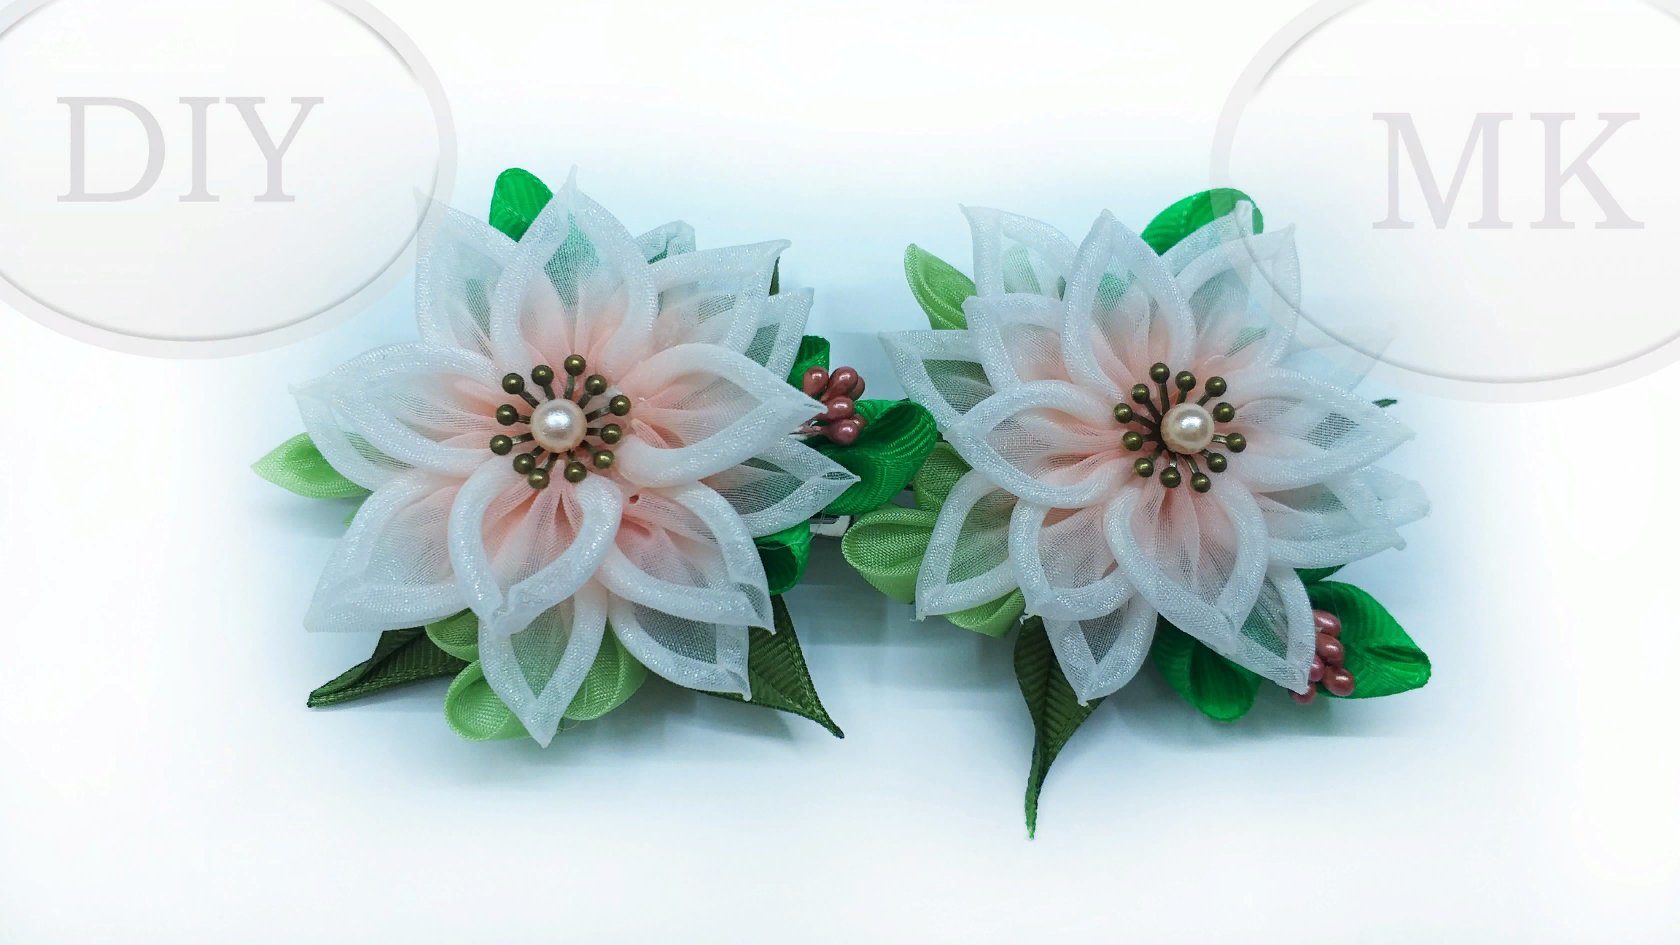 DIY /МК Зажимы (заколки) с цветами из градиентной органзы  /DIY KANZASHI FLOWERS HAIR CLIP